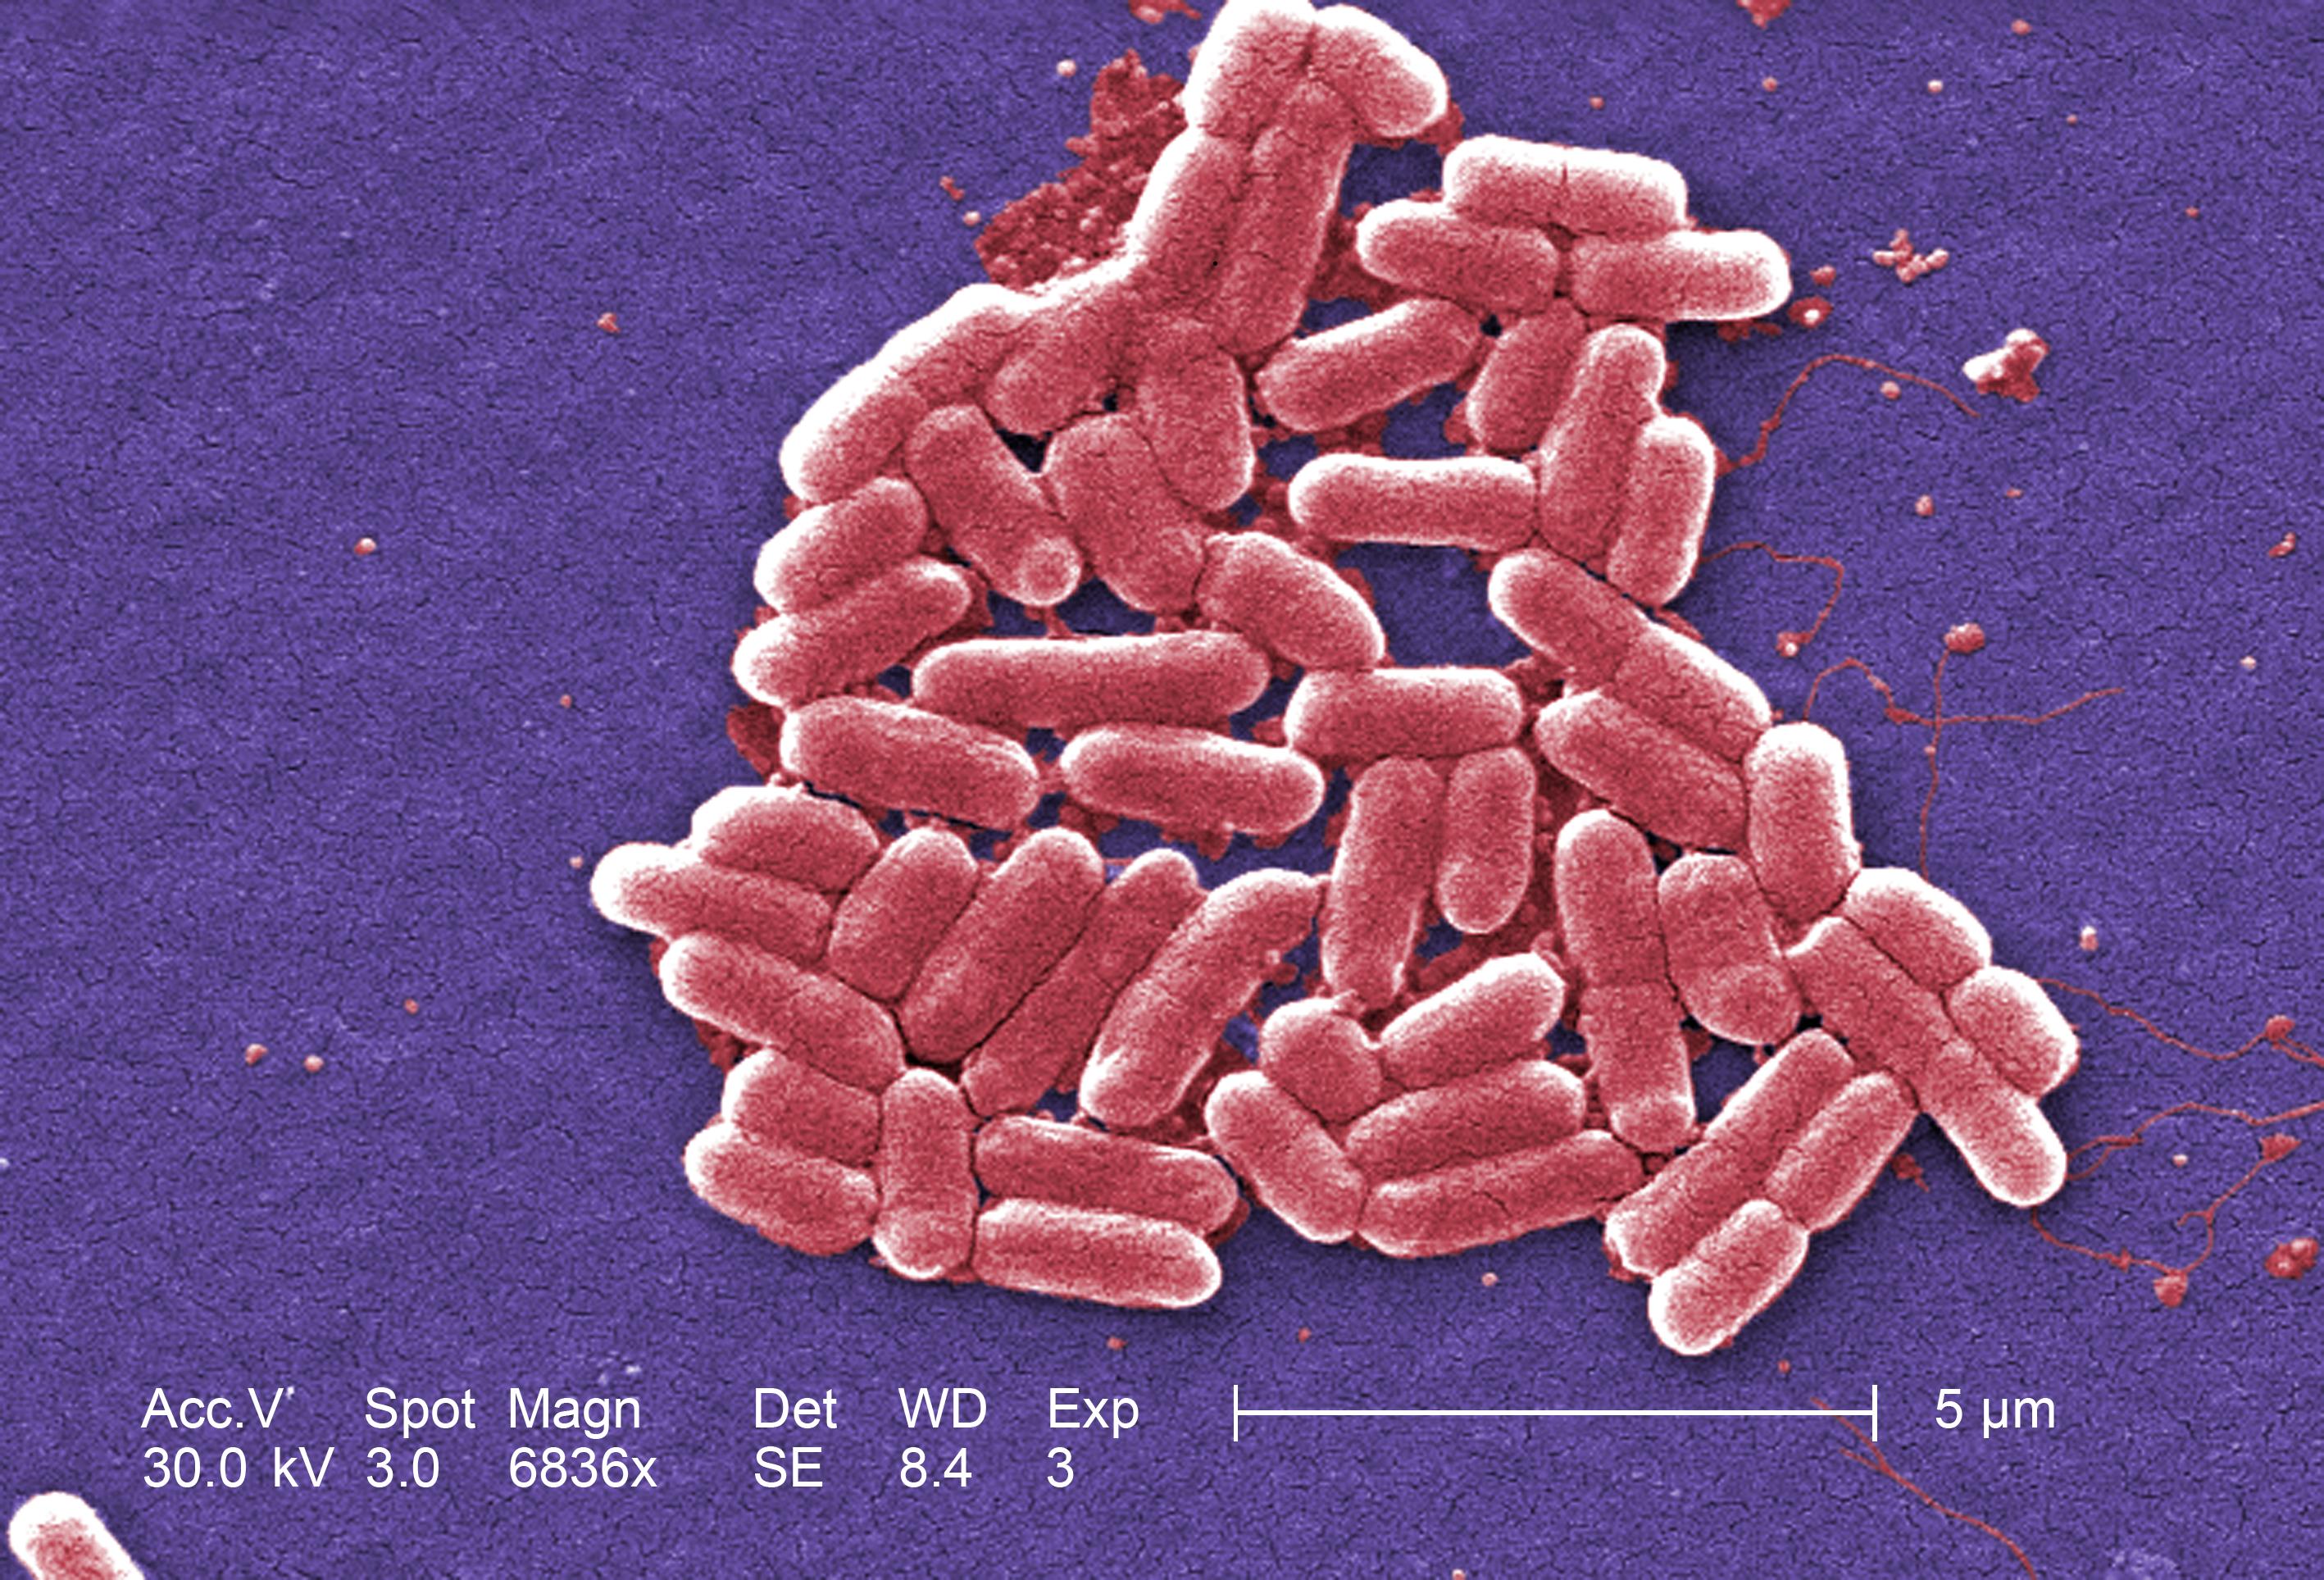 Bactérie Escherichia coli de souche O157:H7 au microscope électronique à balayage. © Janice Haney Carr, Centers for Disease Control and Prevention, domaine public